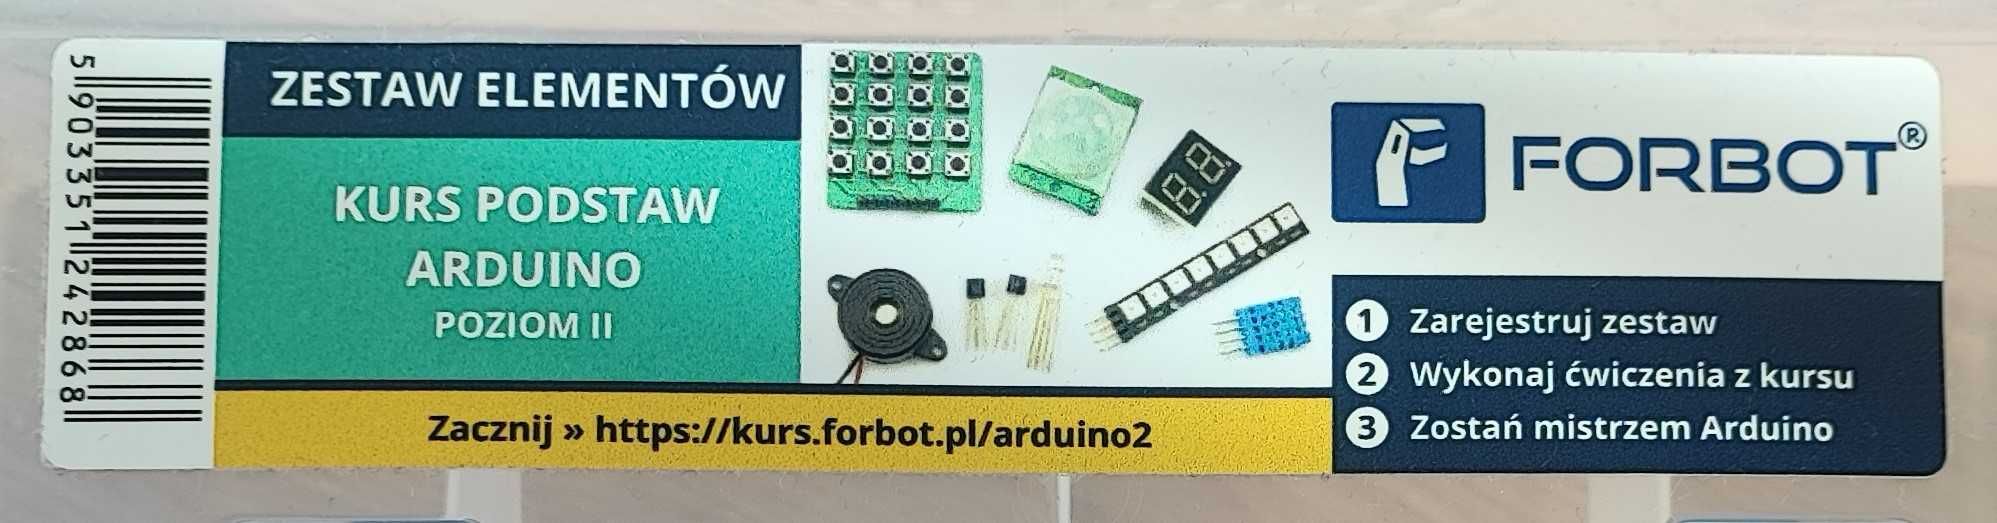 Zestaw FORBOT Mistrz Arduino - pełny zestaw do kursu